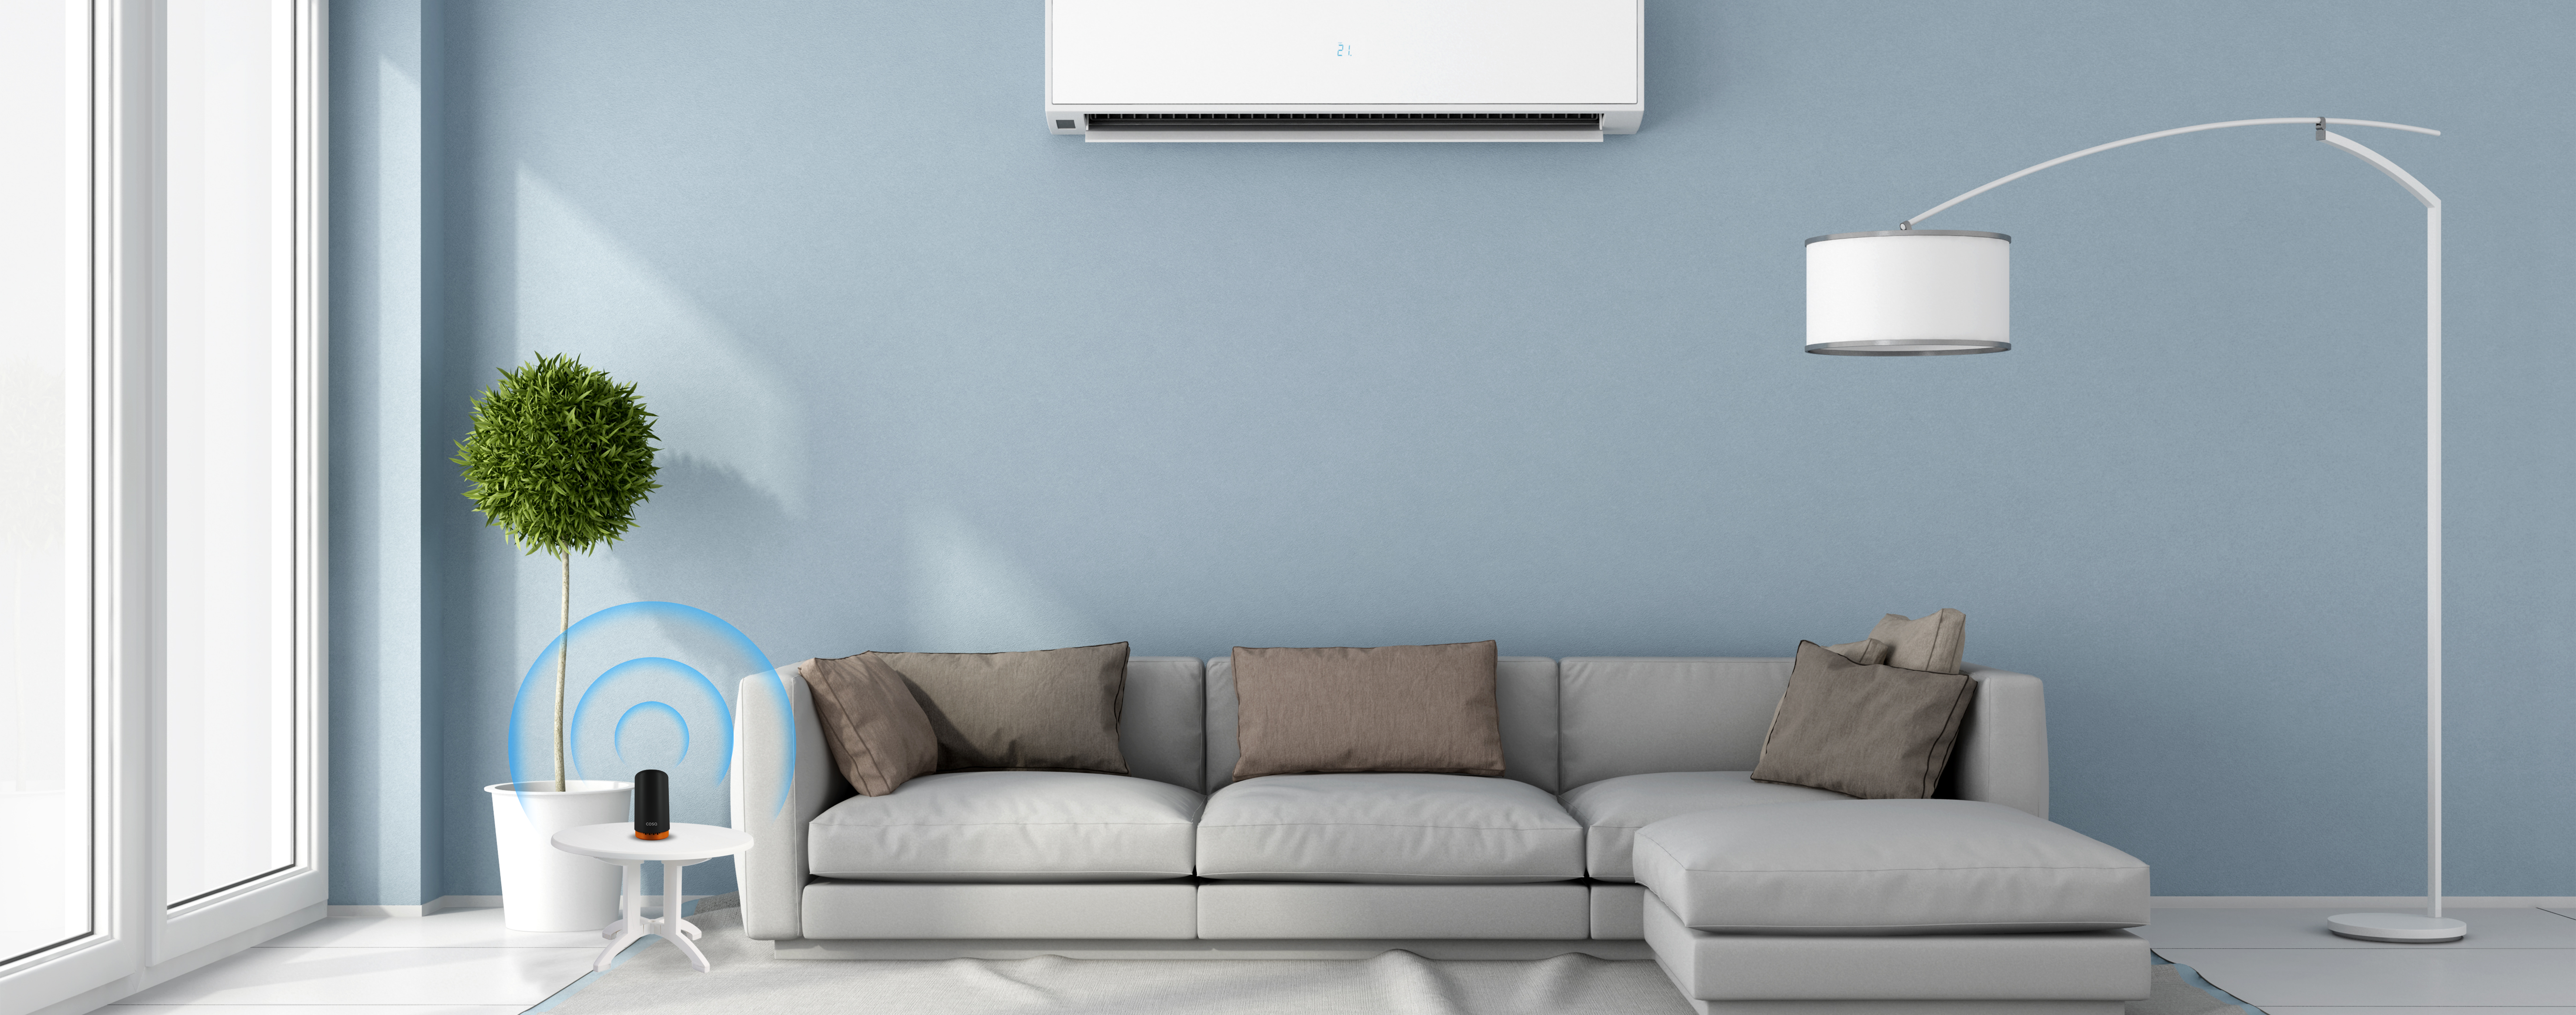 Klimada Elektrik Tüketiminden Tasarruf Etme Yöntemleri | by Cosa | COSA  Smart Thermostat | Blog